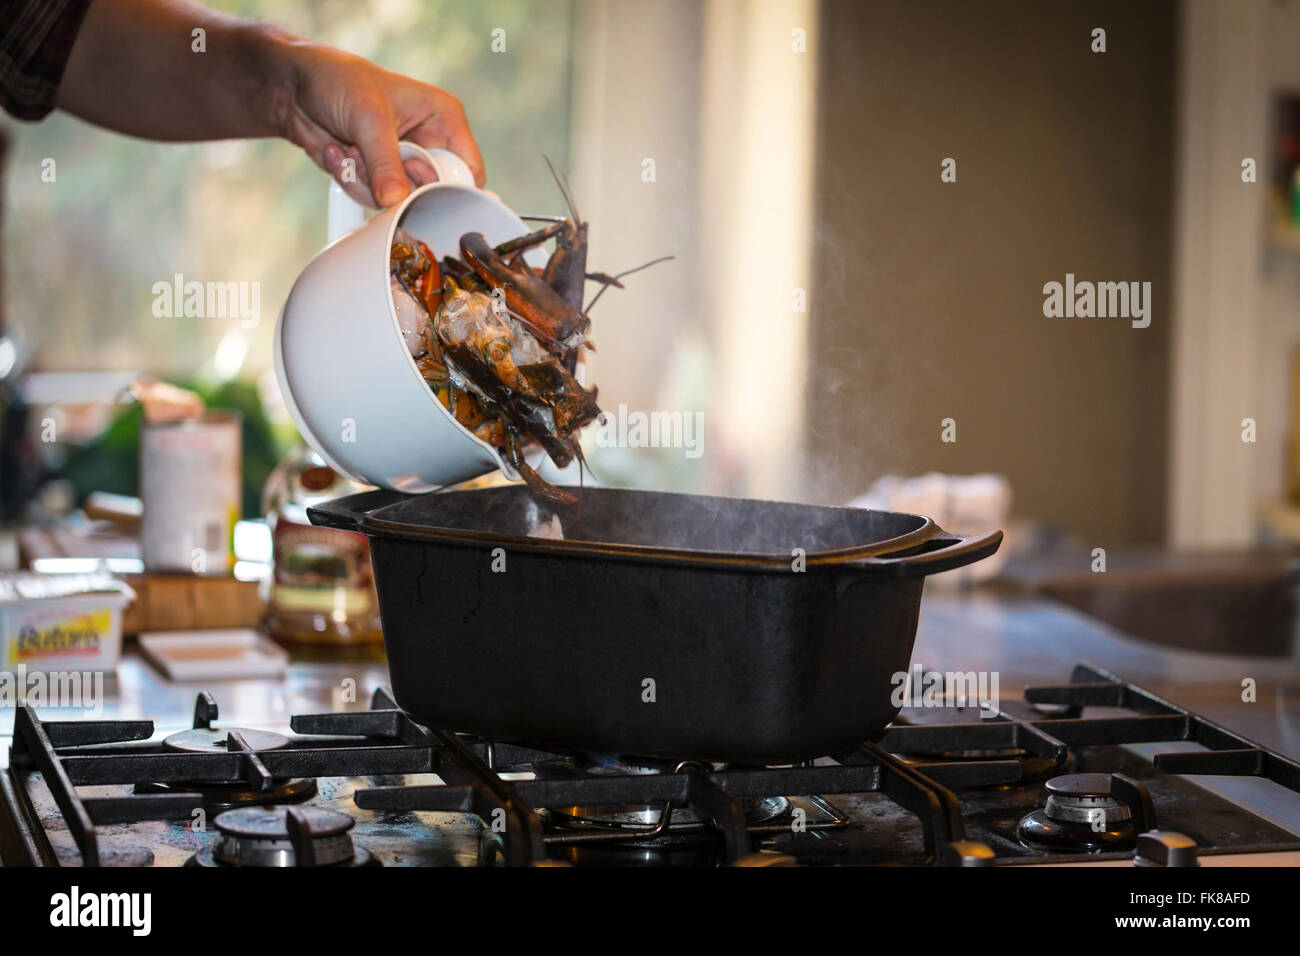 Un plat de cuisson du homard, le homard est versé dans un pot sur une cuisinière à gaz Banque D'Images